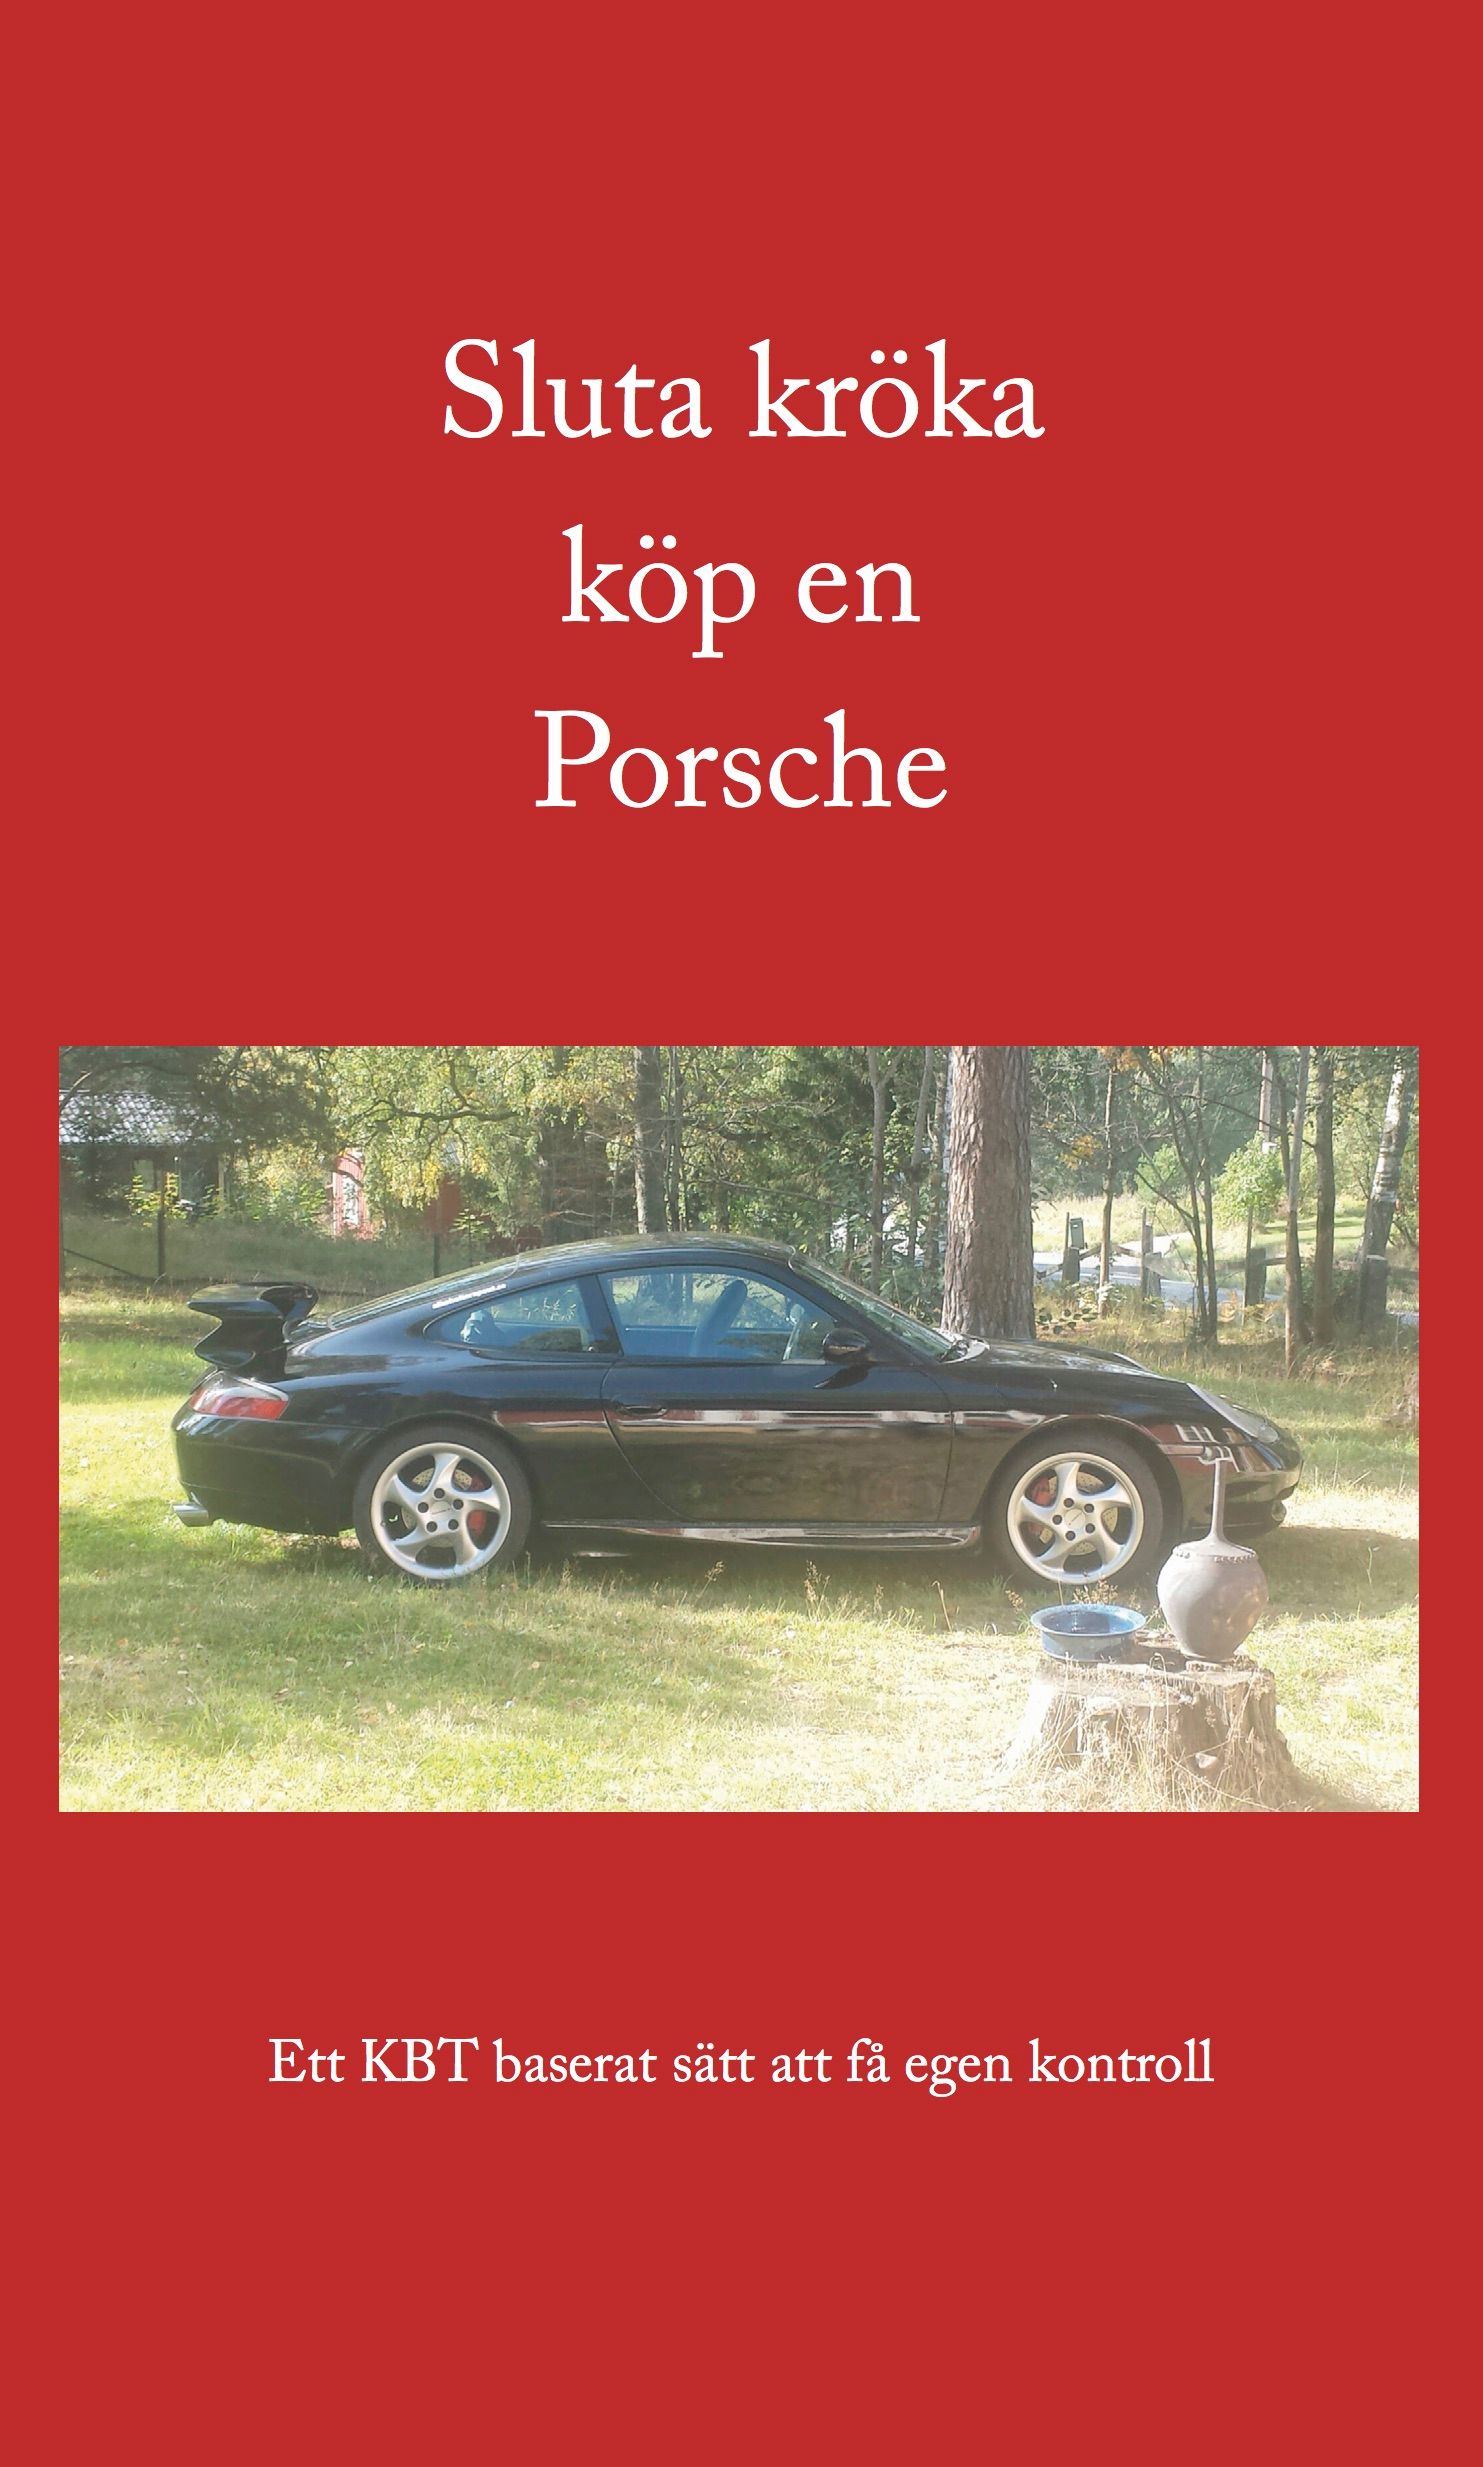 Sluta kröka köp en Porsche, e-bok av Isak Isaksson